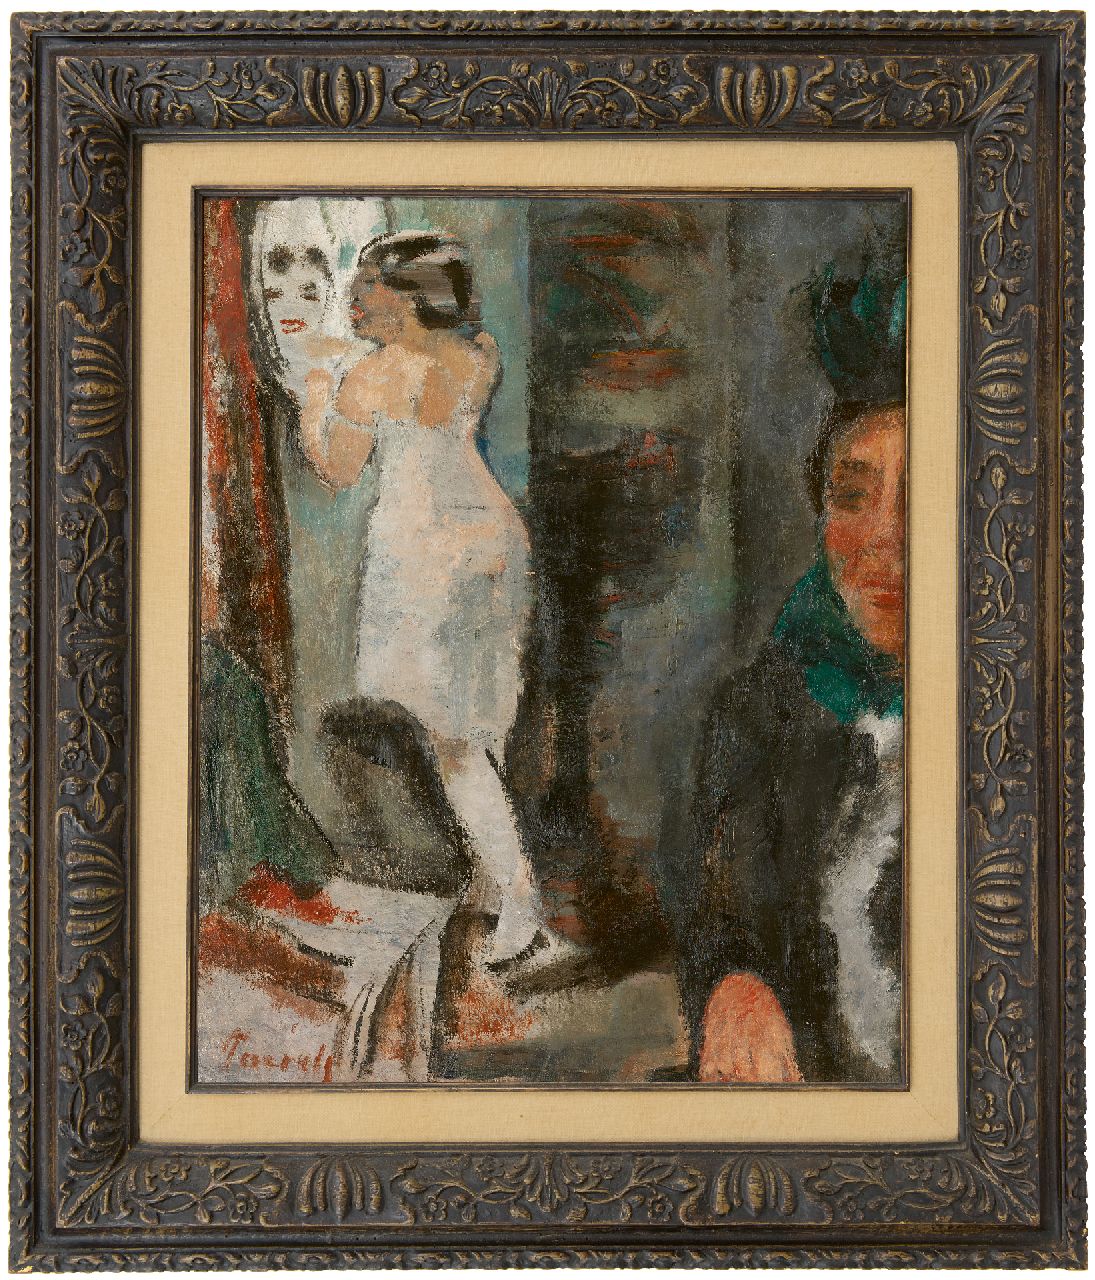 Paerels W.A.  | 'Willem' Adriaan Paerels | Schilderijen te koop aangeboden | Vrouw voor de spiegel, olieverf op doek 50,0 x 40,0 cm, gesigneerd linksonder en te dateren 1922